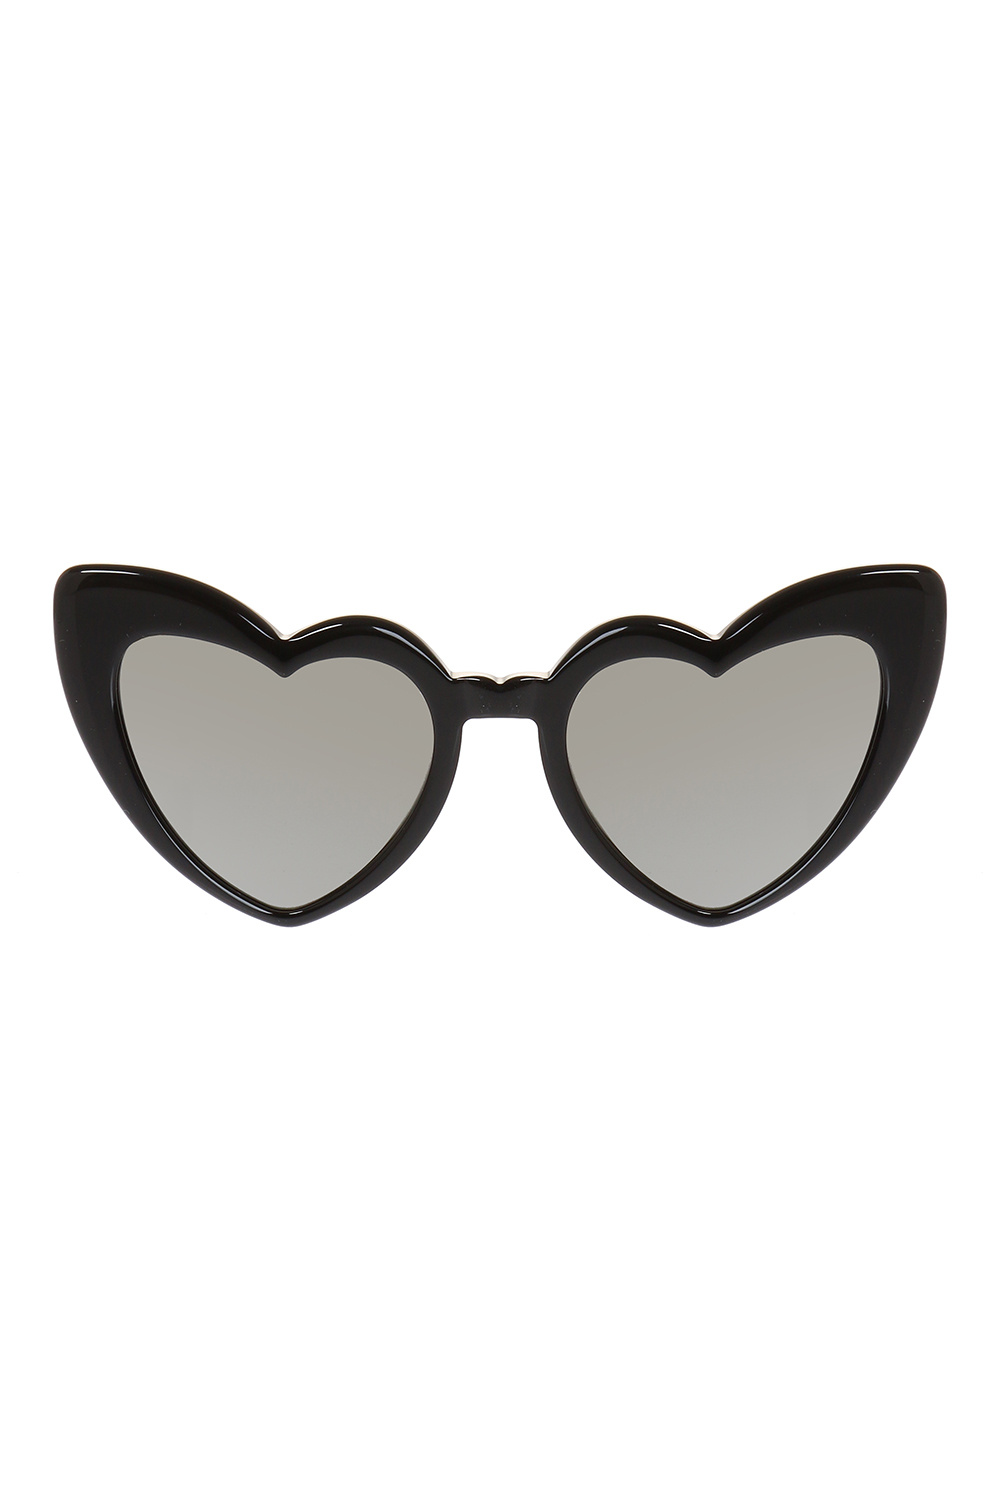 Saint Laurent item sunglasses